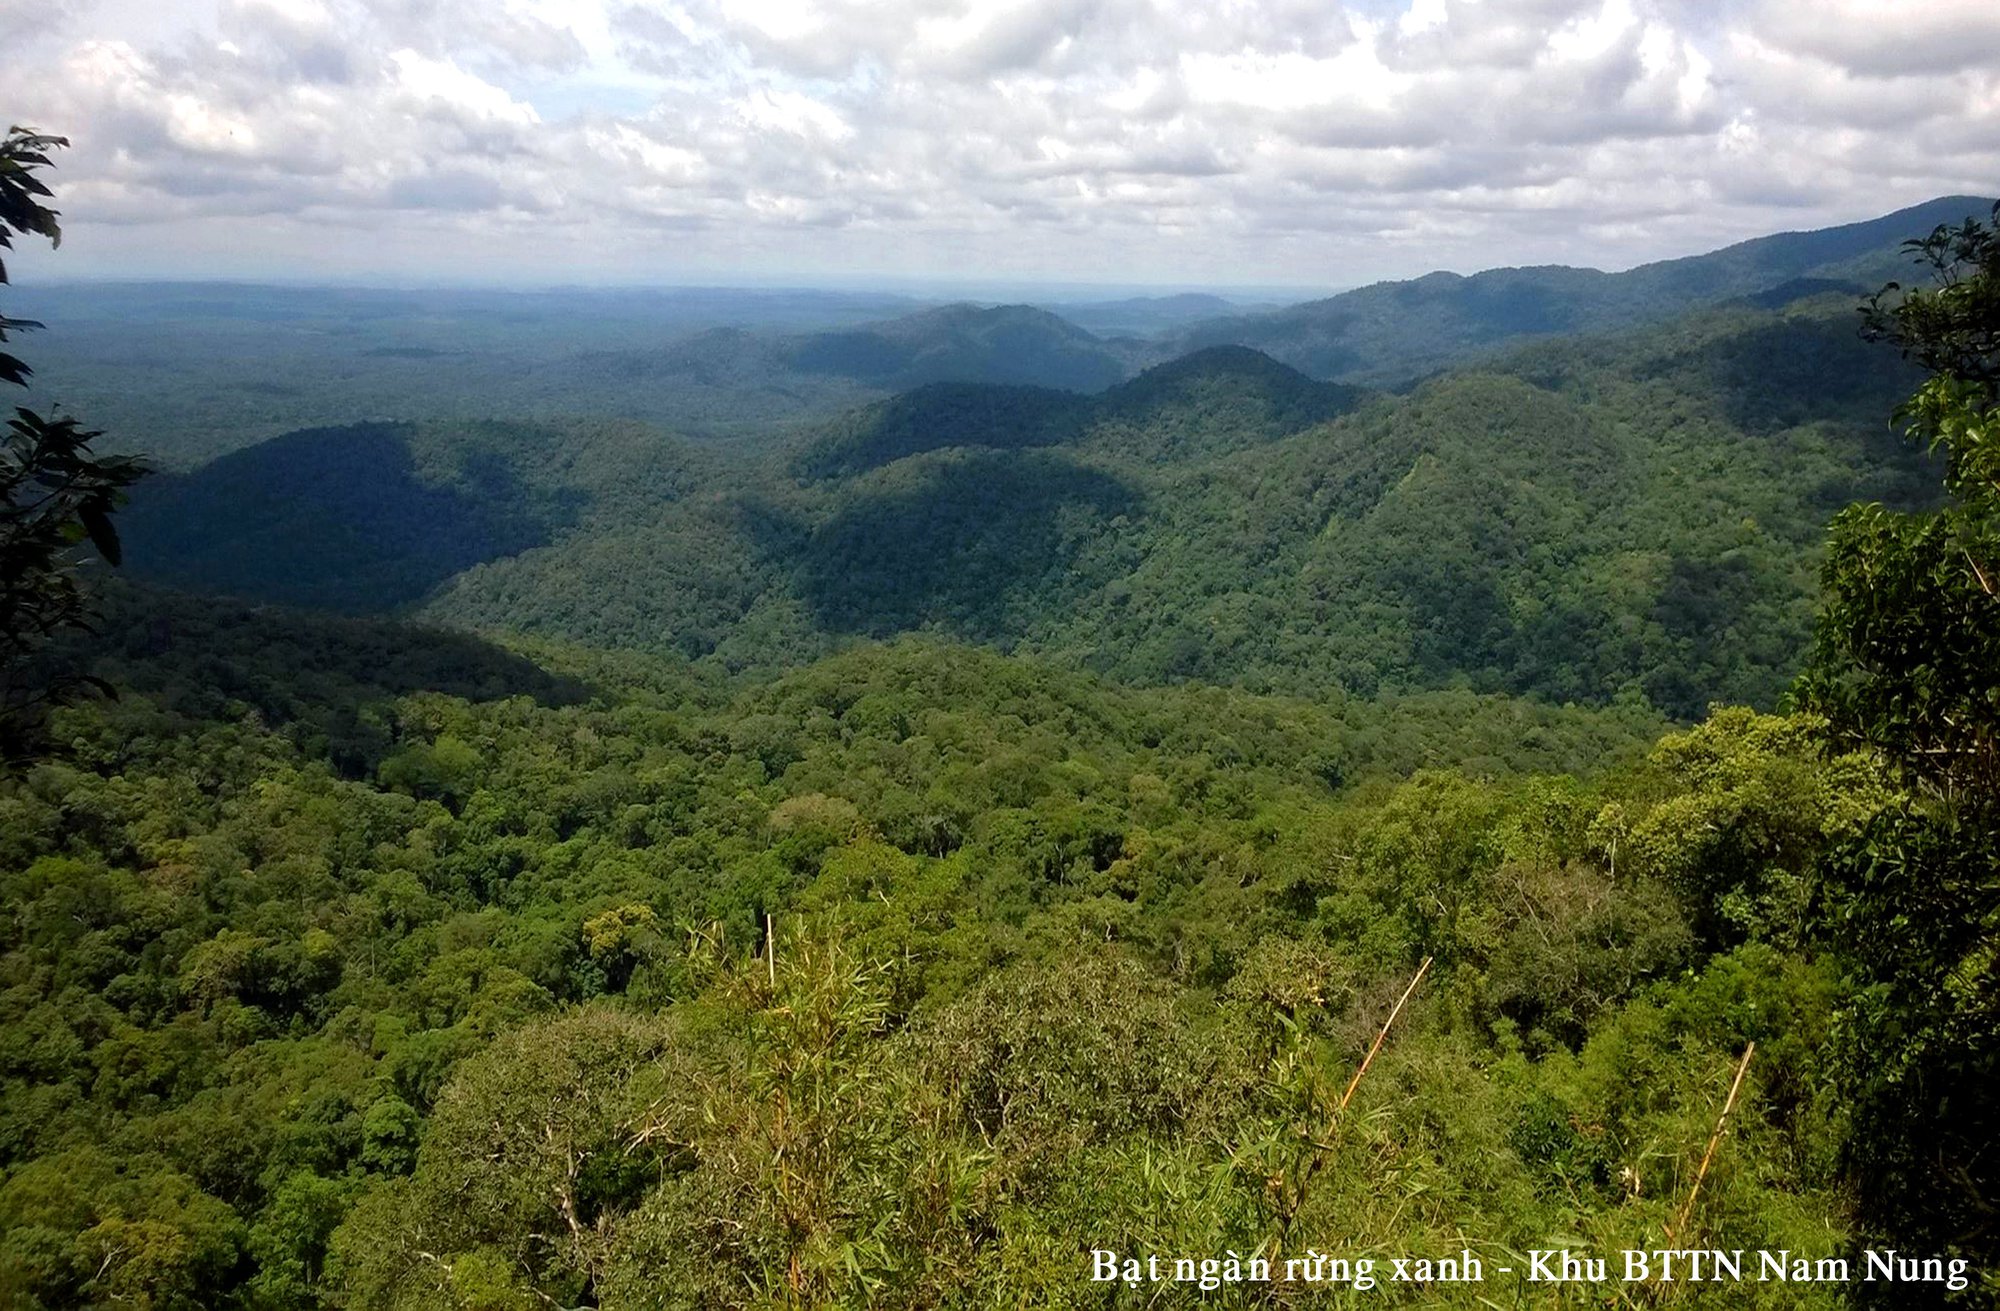 Khu bảo tồn thiên nhiên Nam Nung: “Kích hoạt” tiềm năng du lịch sinh thái trong môi trường rừng - Ảnh 4.